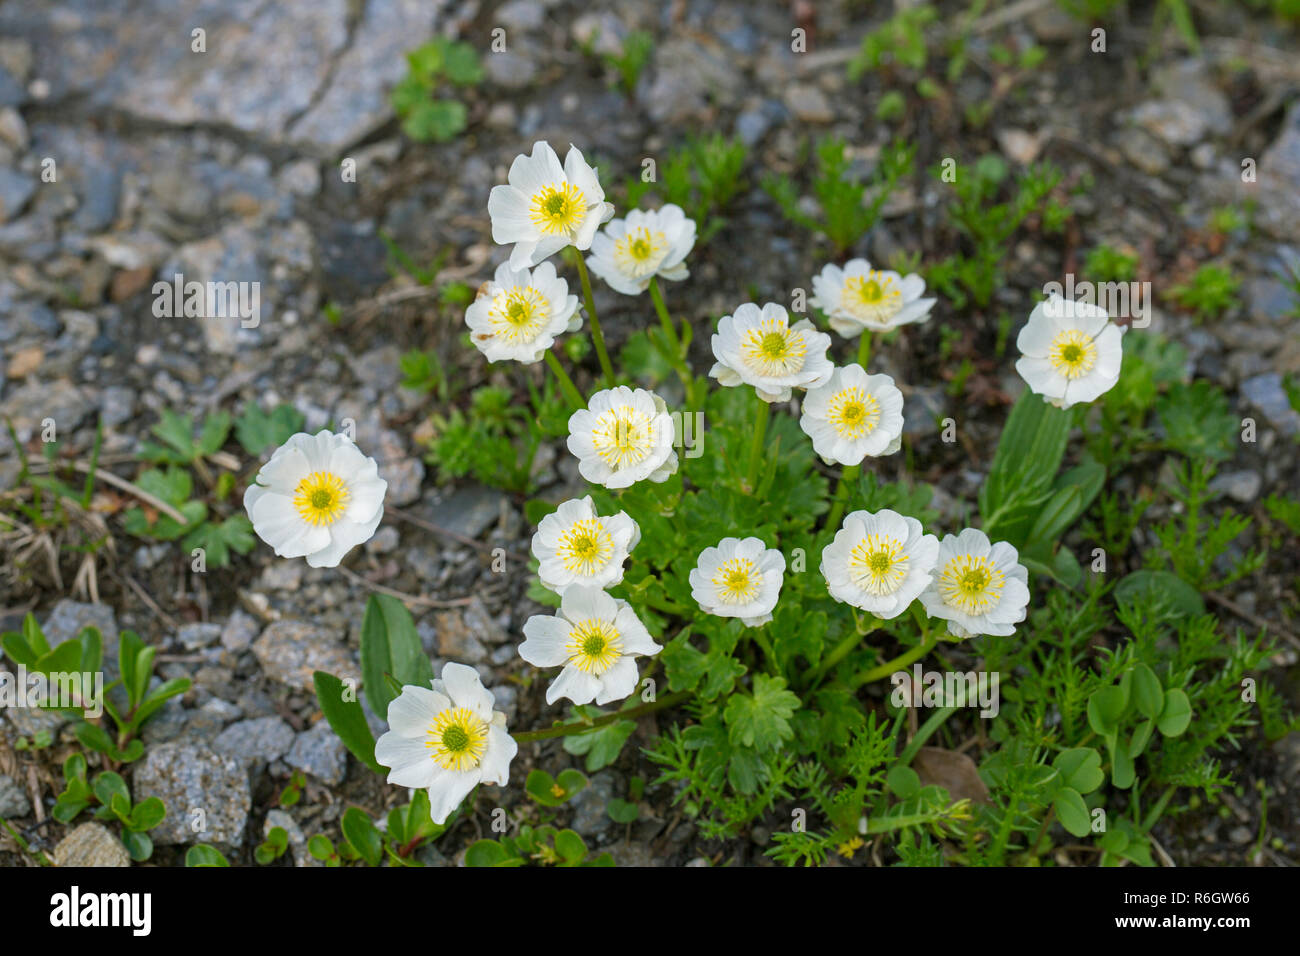 Crowfoot alpino / alpino buttercup (Ranunculus alpestris) flores en verano, nativa de los Alpes, los Pirineos, los Cárpatos y los Apeninos Foto de stock